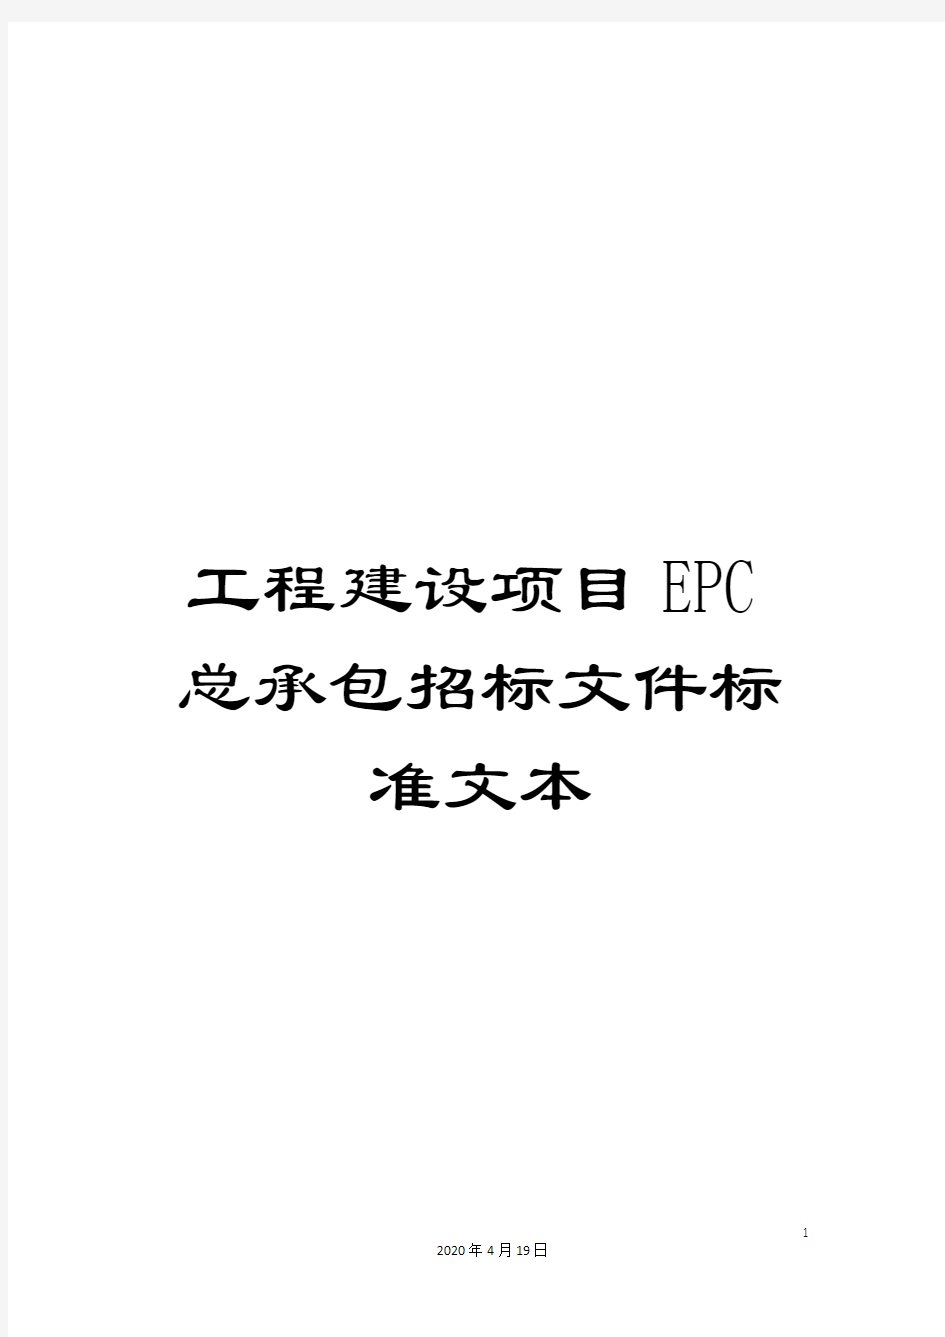 工程建设项目EPC总承包招标文件标准文本